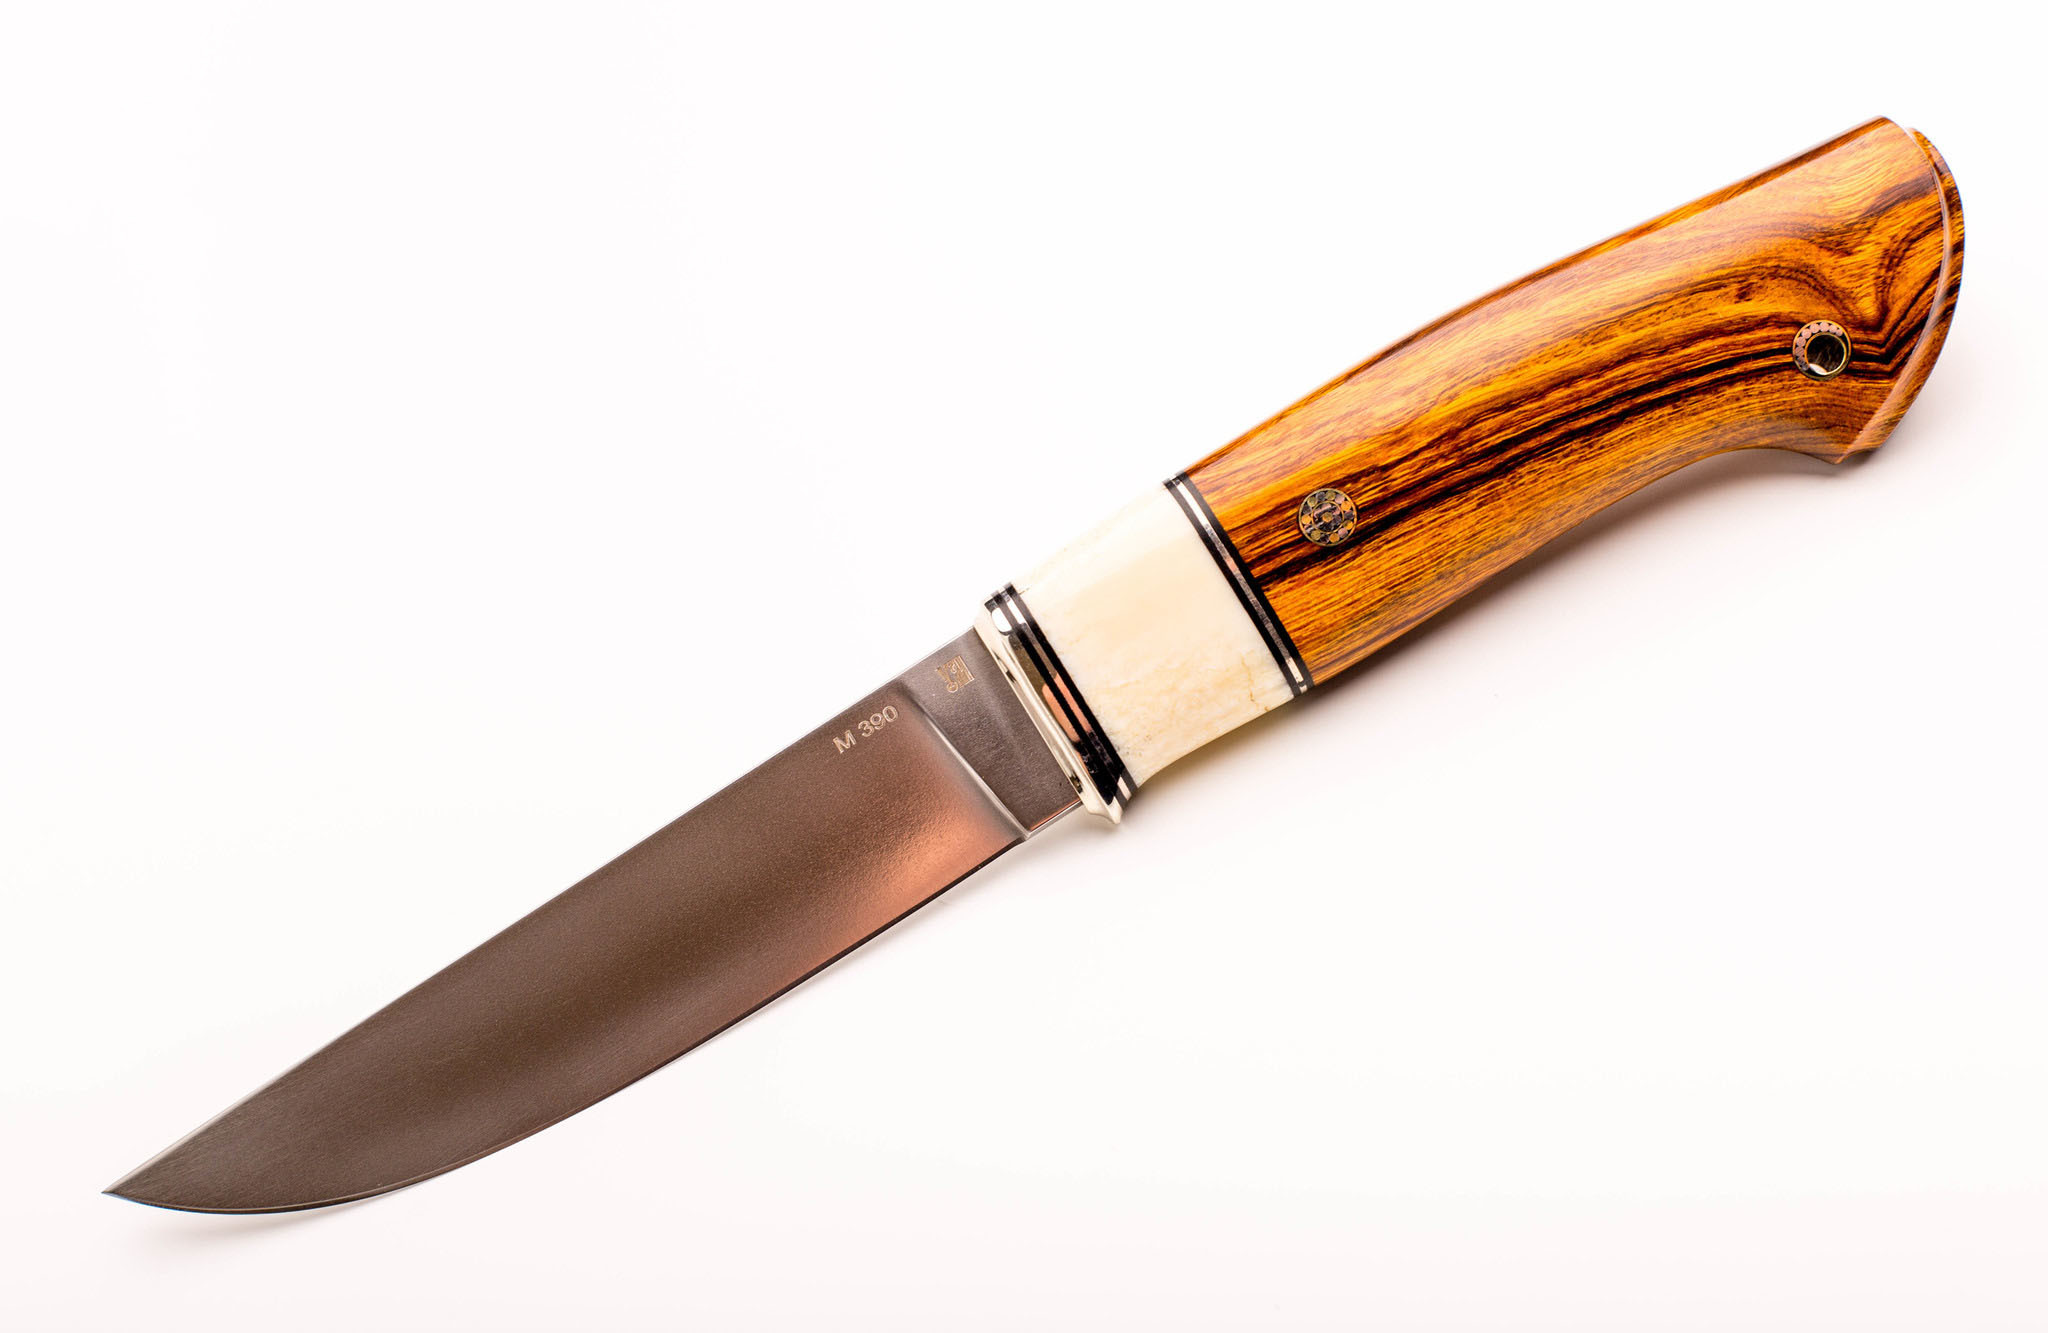 Нож Лидер 3, сталь M390, железное дерево, вставка рог лося деревянный нож охотничий